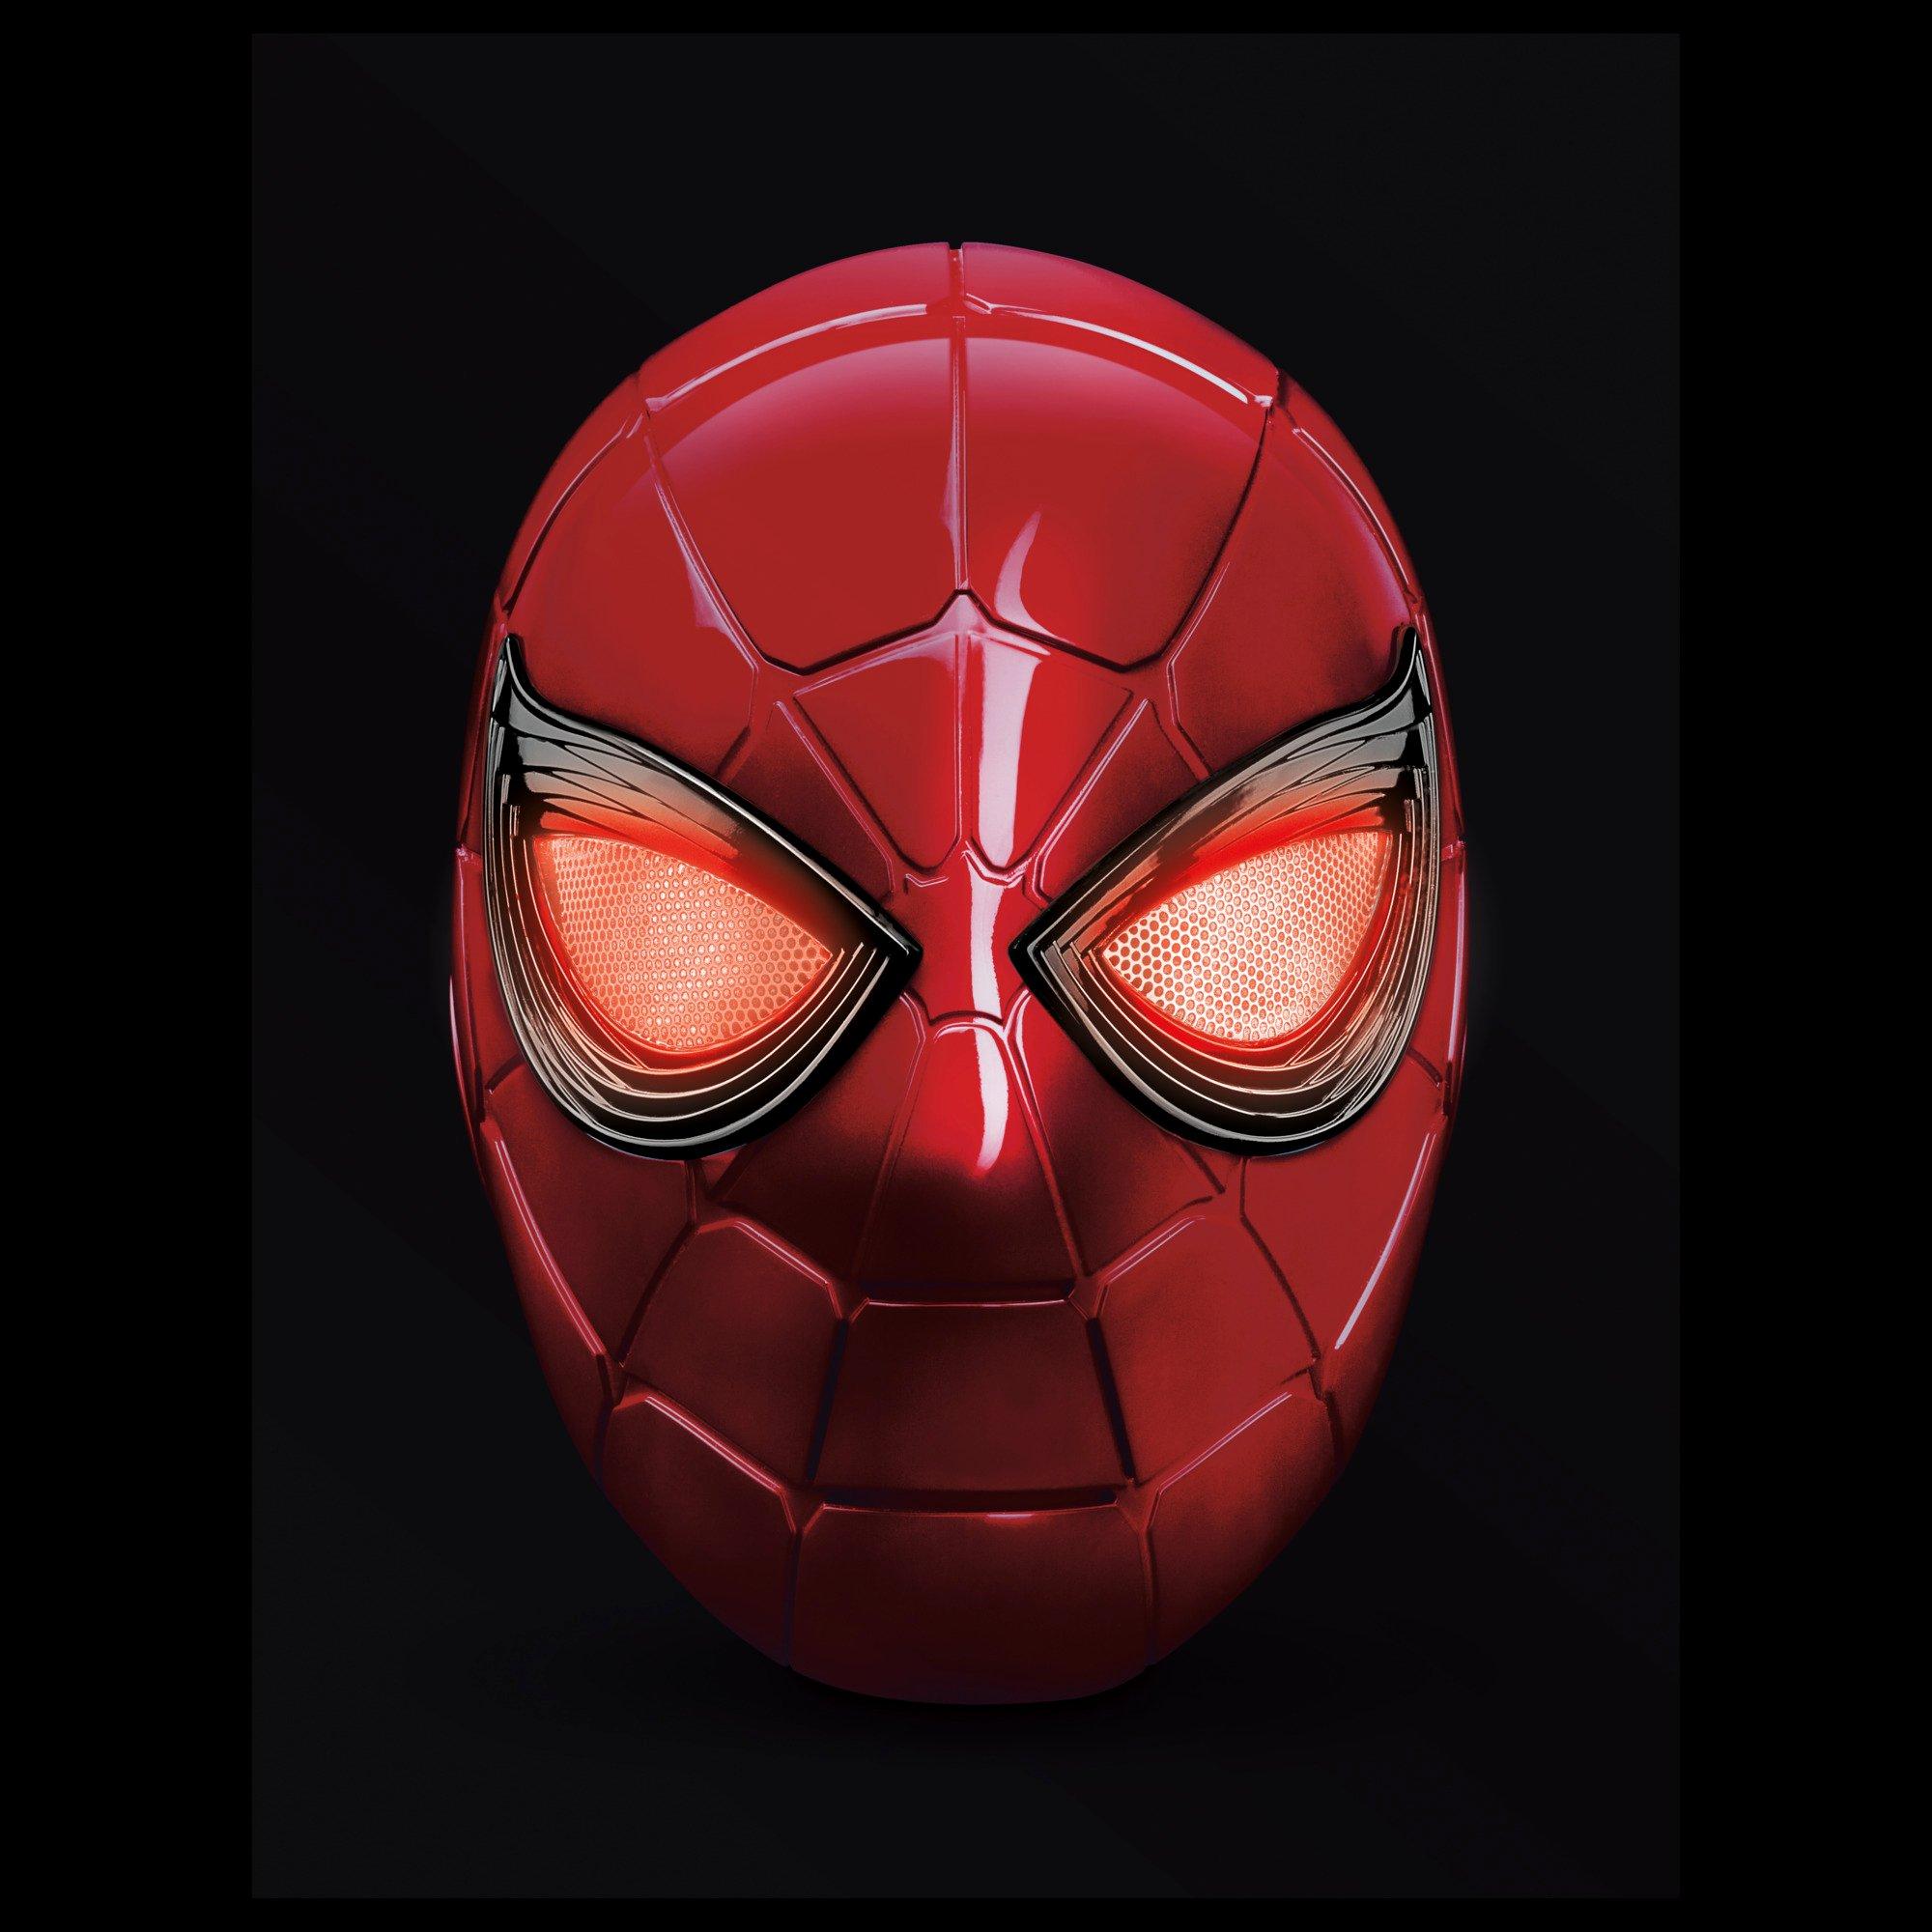 Hasbro Marvel Legends Series Avengers Endgame Iron Spider Spider-Man Helmet